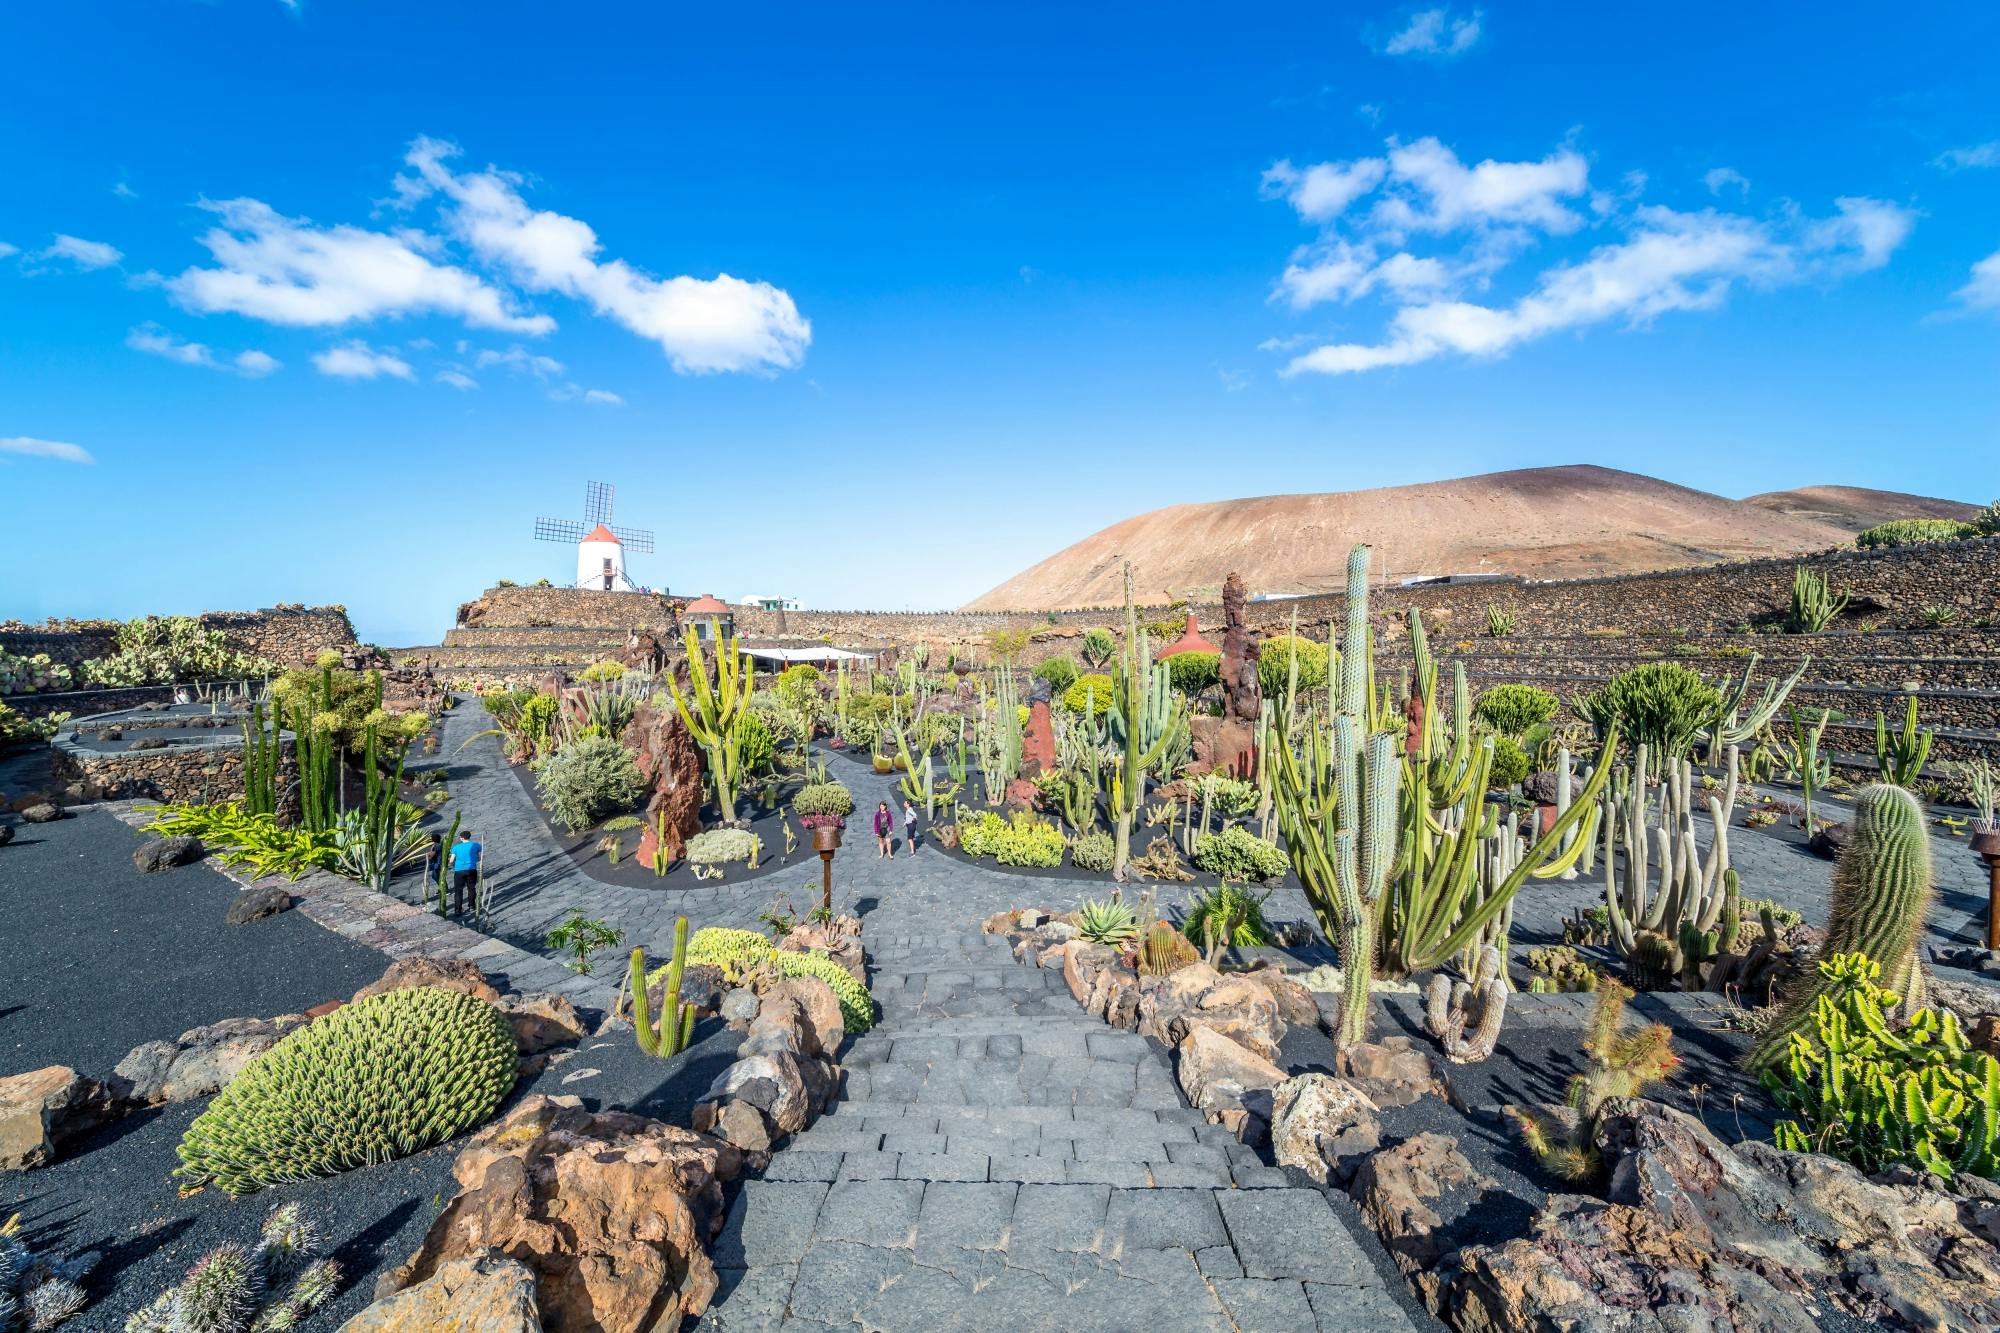 Lanzarote Cesar Manrique Foundation & Cactus Garden Tour